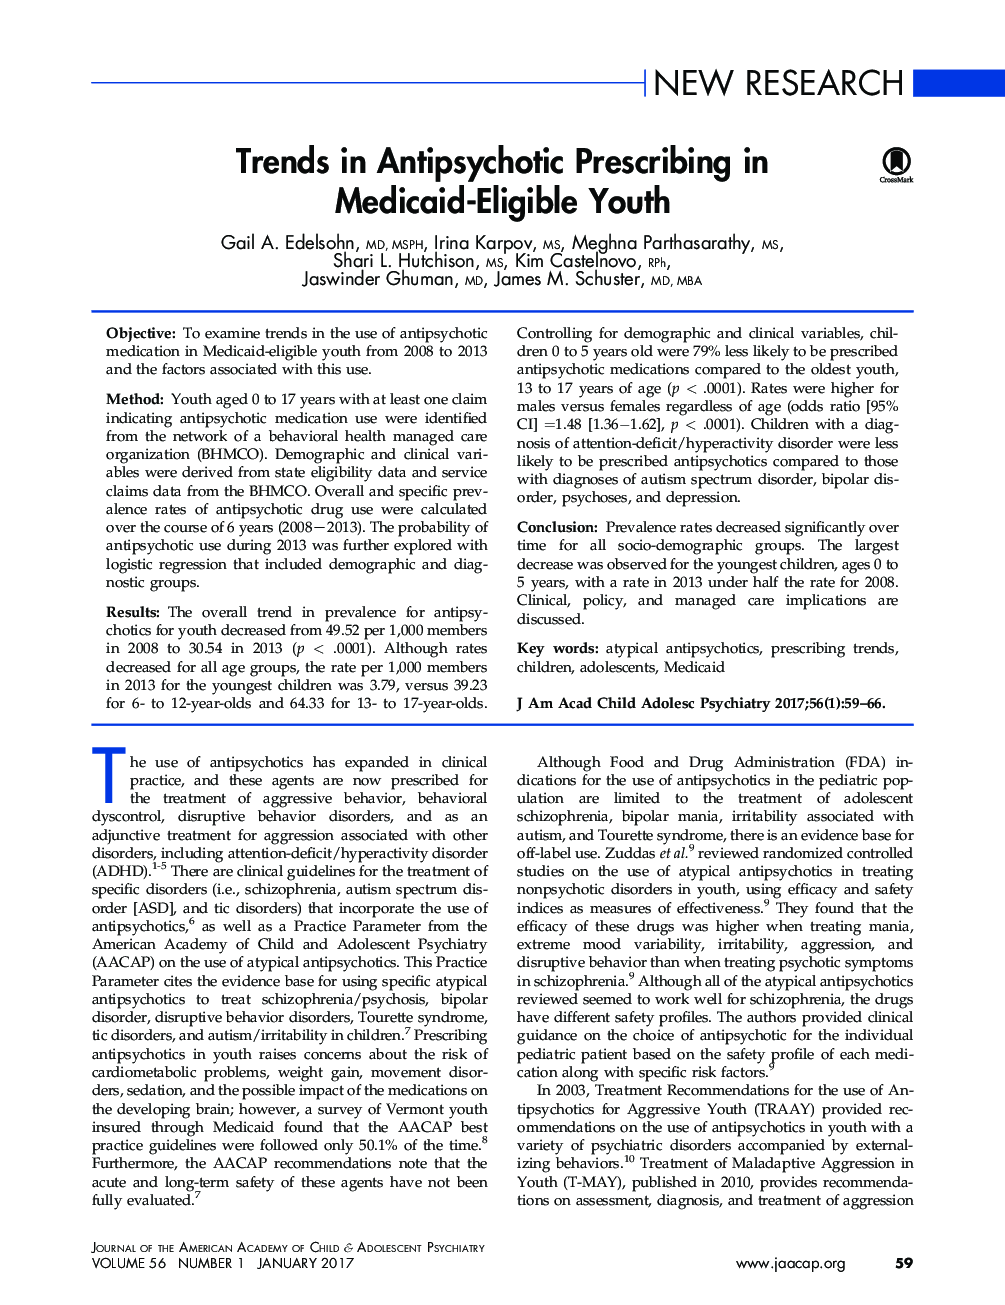 تحقیقات جدید در مورد تجویز ضد پیری در جوانان واجد شرایط مددکاری صورت می گیرد 